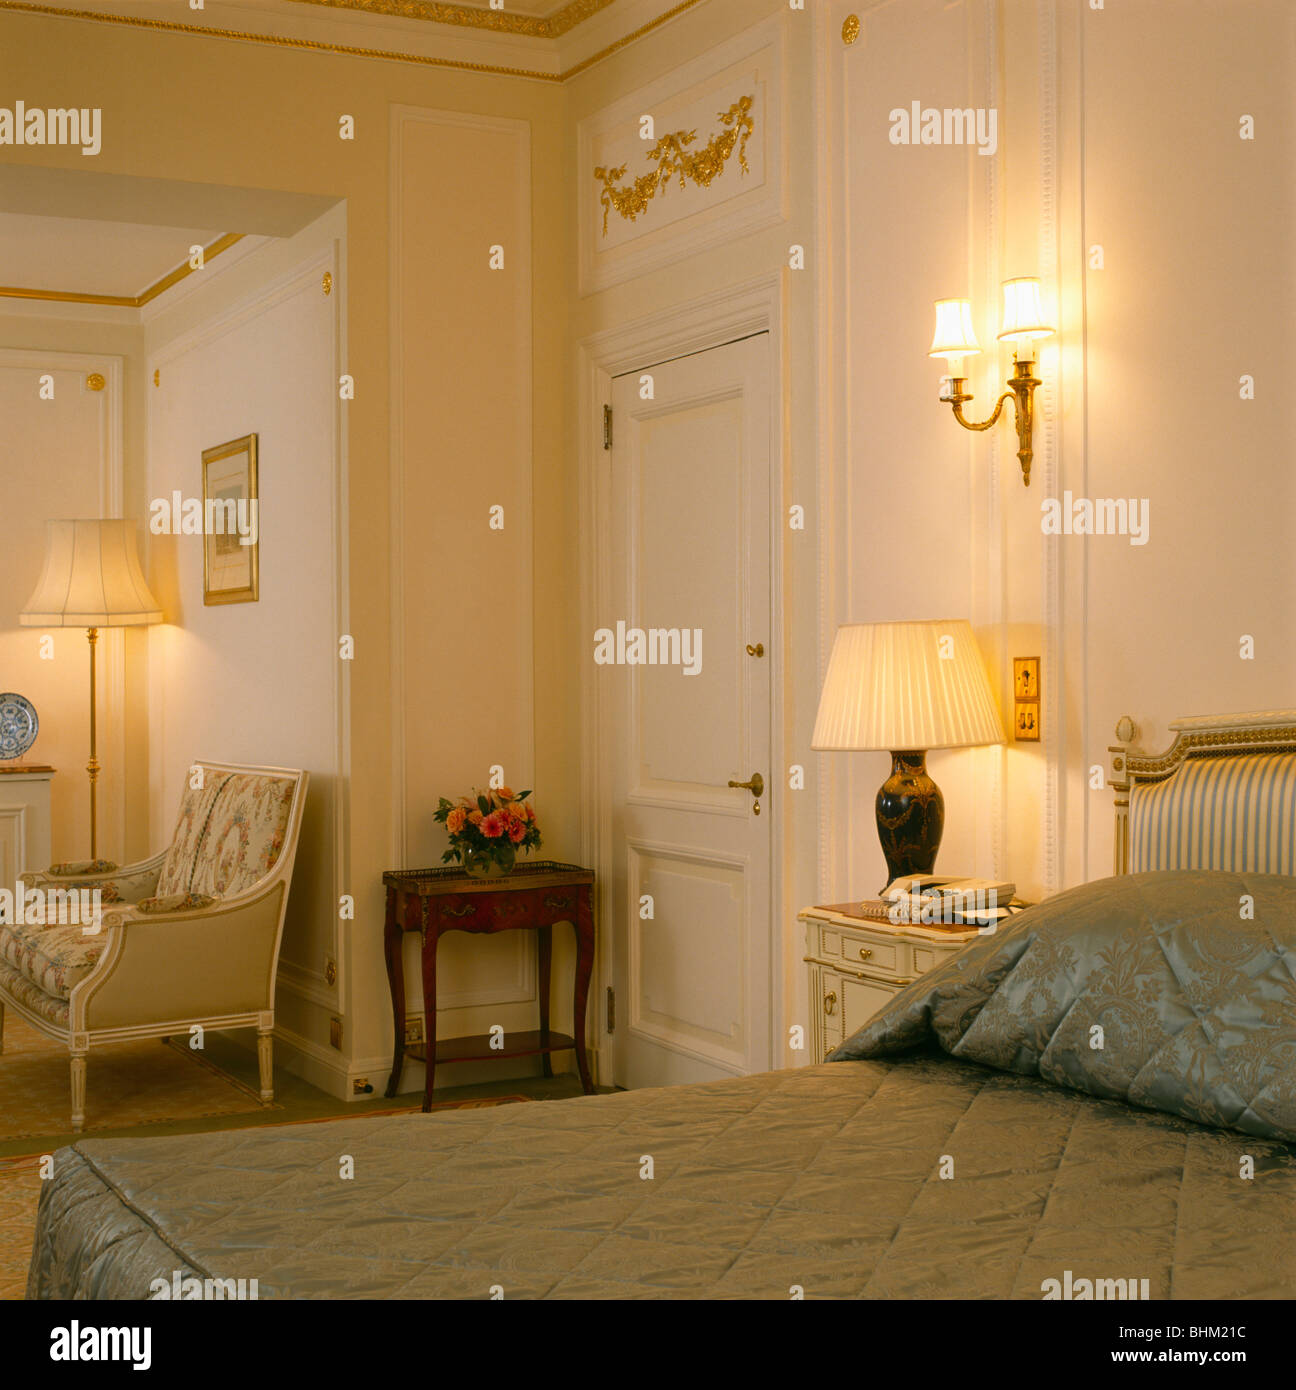 A parete sopra la luce illumina la lampada sul comodino in crema tradizionale townhouse camera da letto con trapunta montato sul basamento Foto Stock